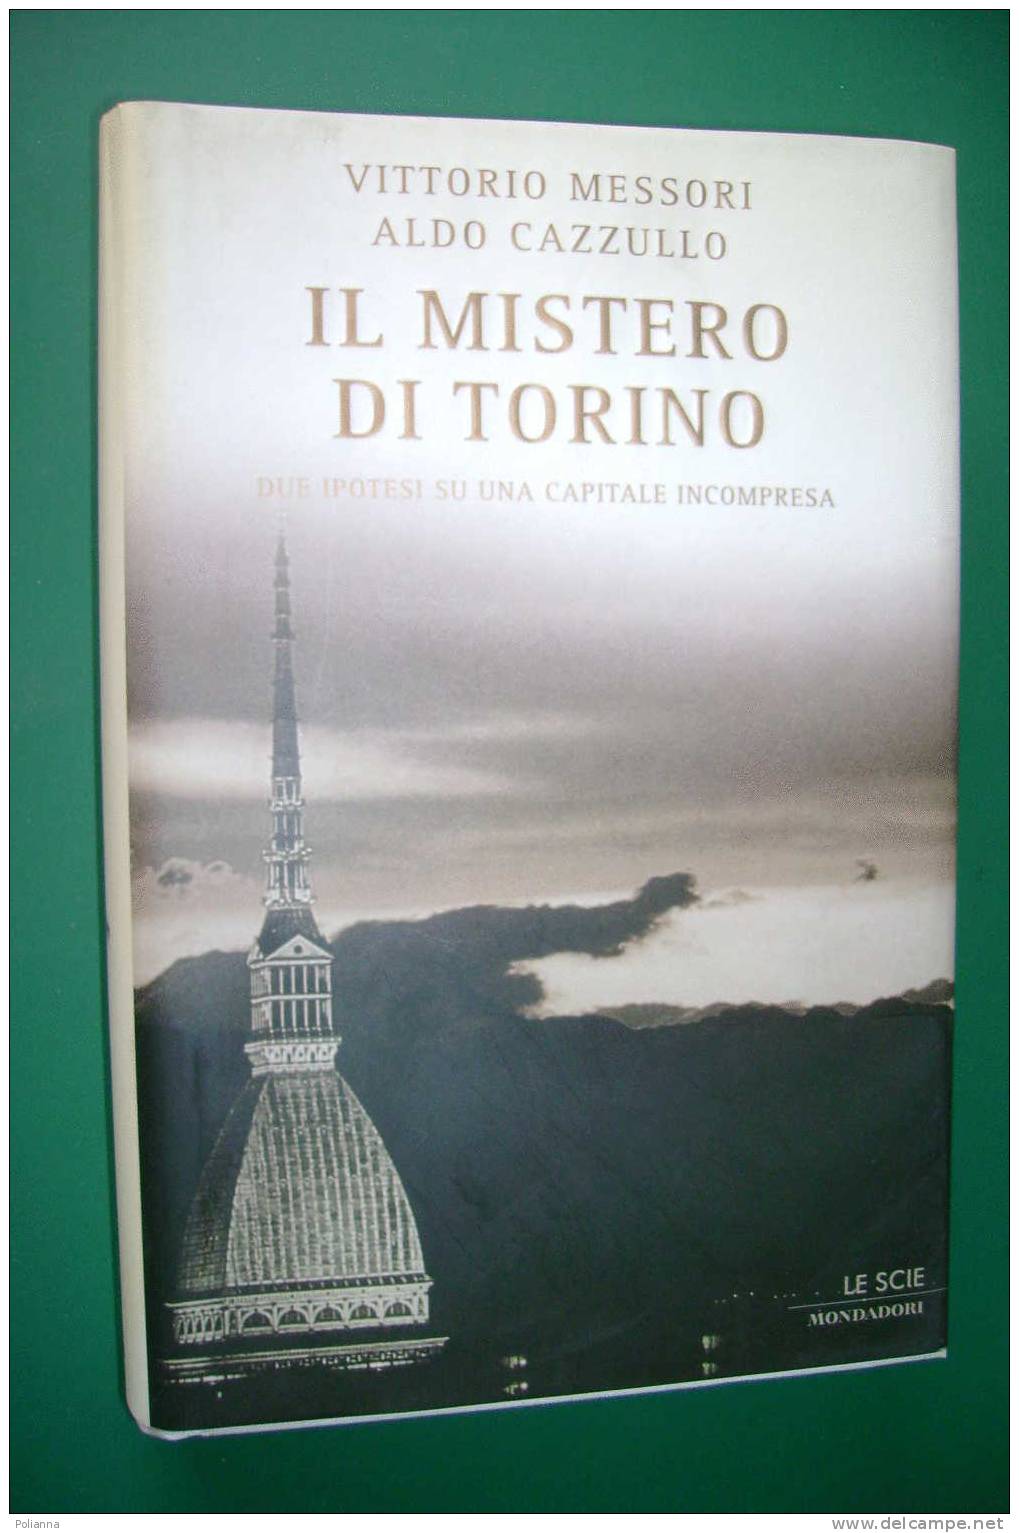 PDU/8 Messori Cazzullo IL MISTERO DI TORINO Le Scie Mondadori I^ Ed.2004/Sindone/Superga - Old